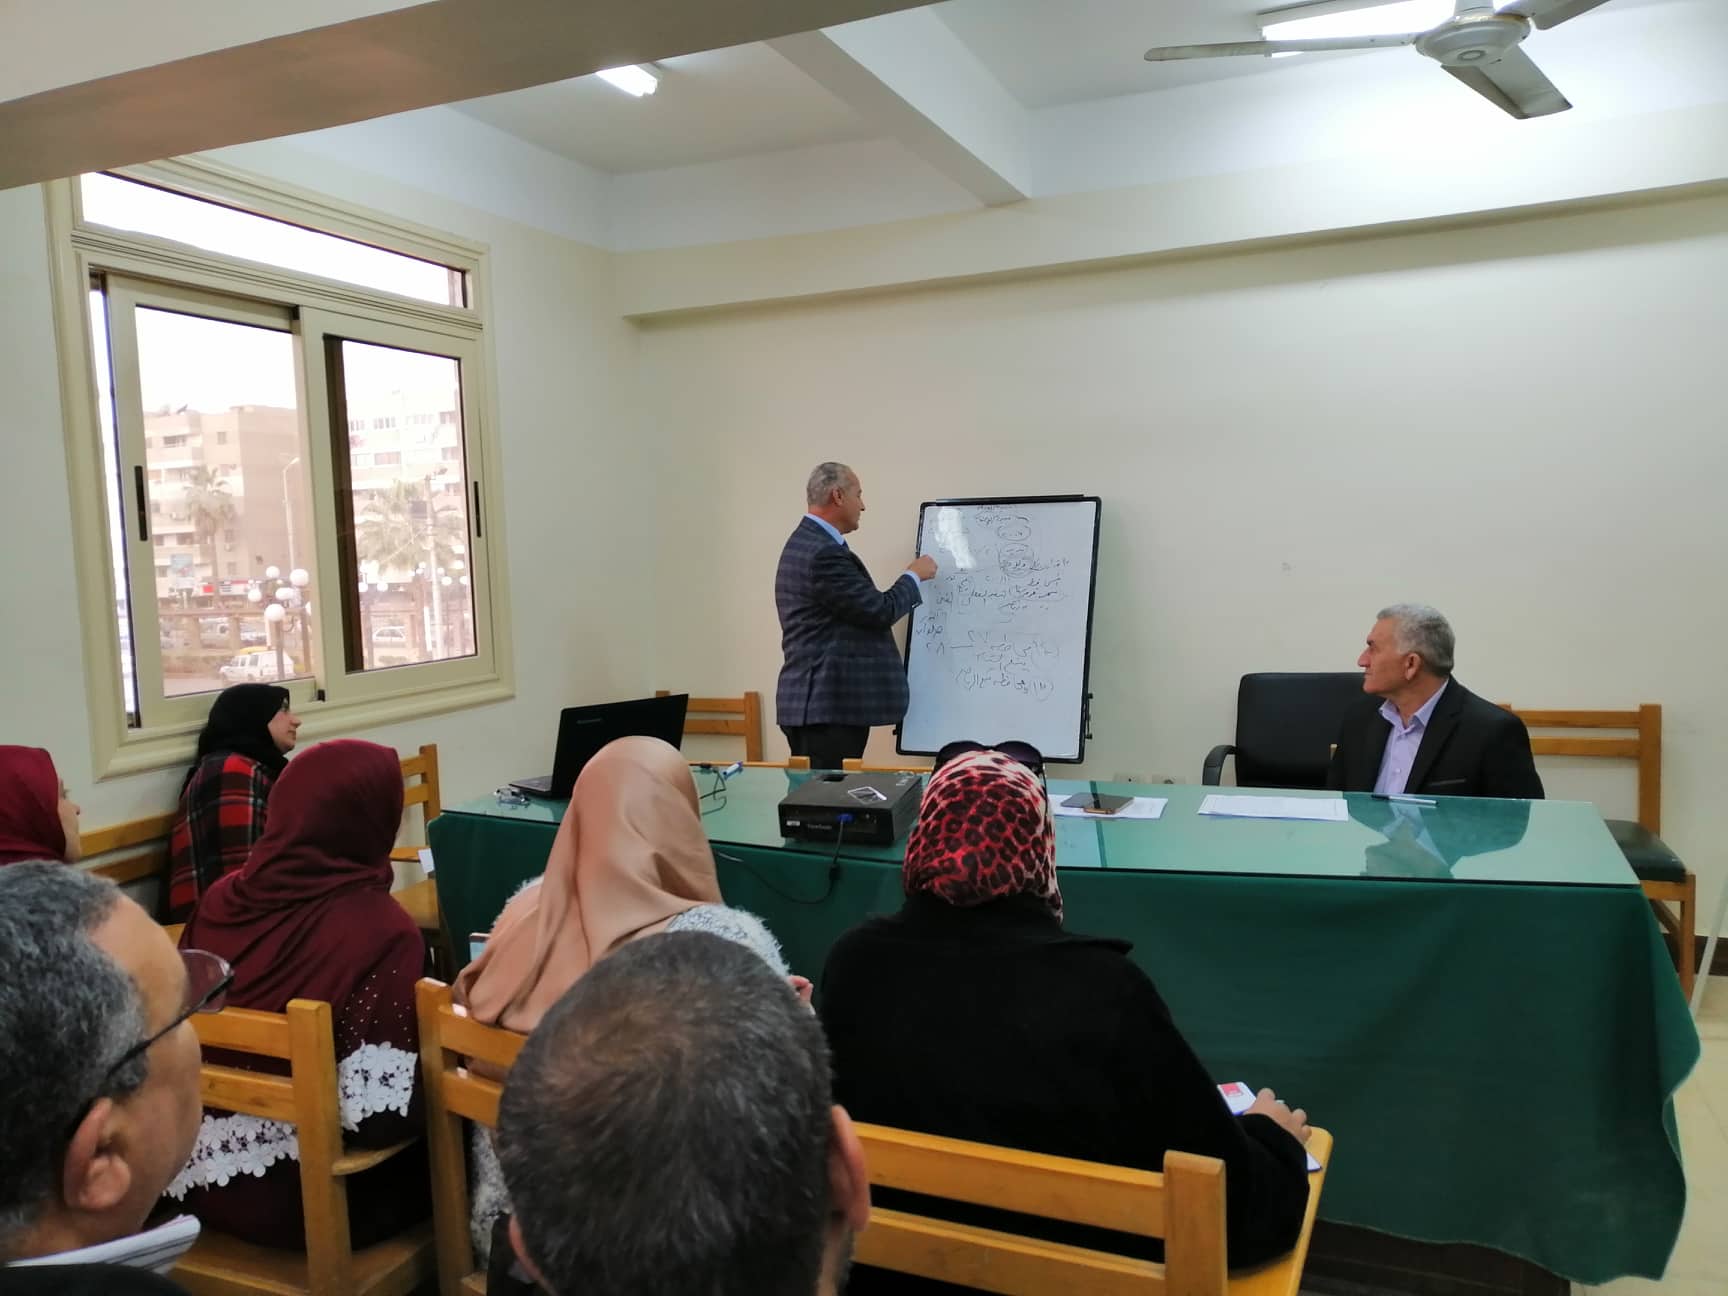   مديرية شباب كفر الشيخ تنظم دورة تدريبية لتدريب العالمين على القوانين الجديدة  